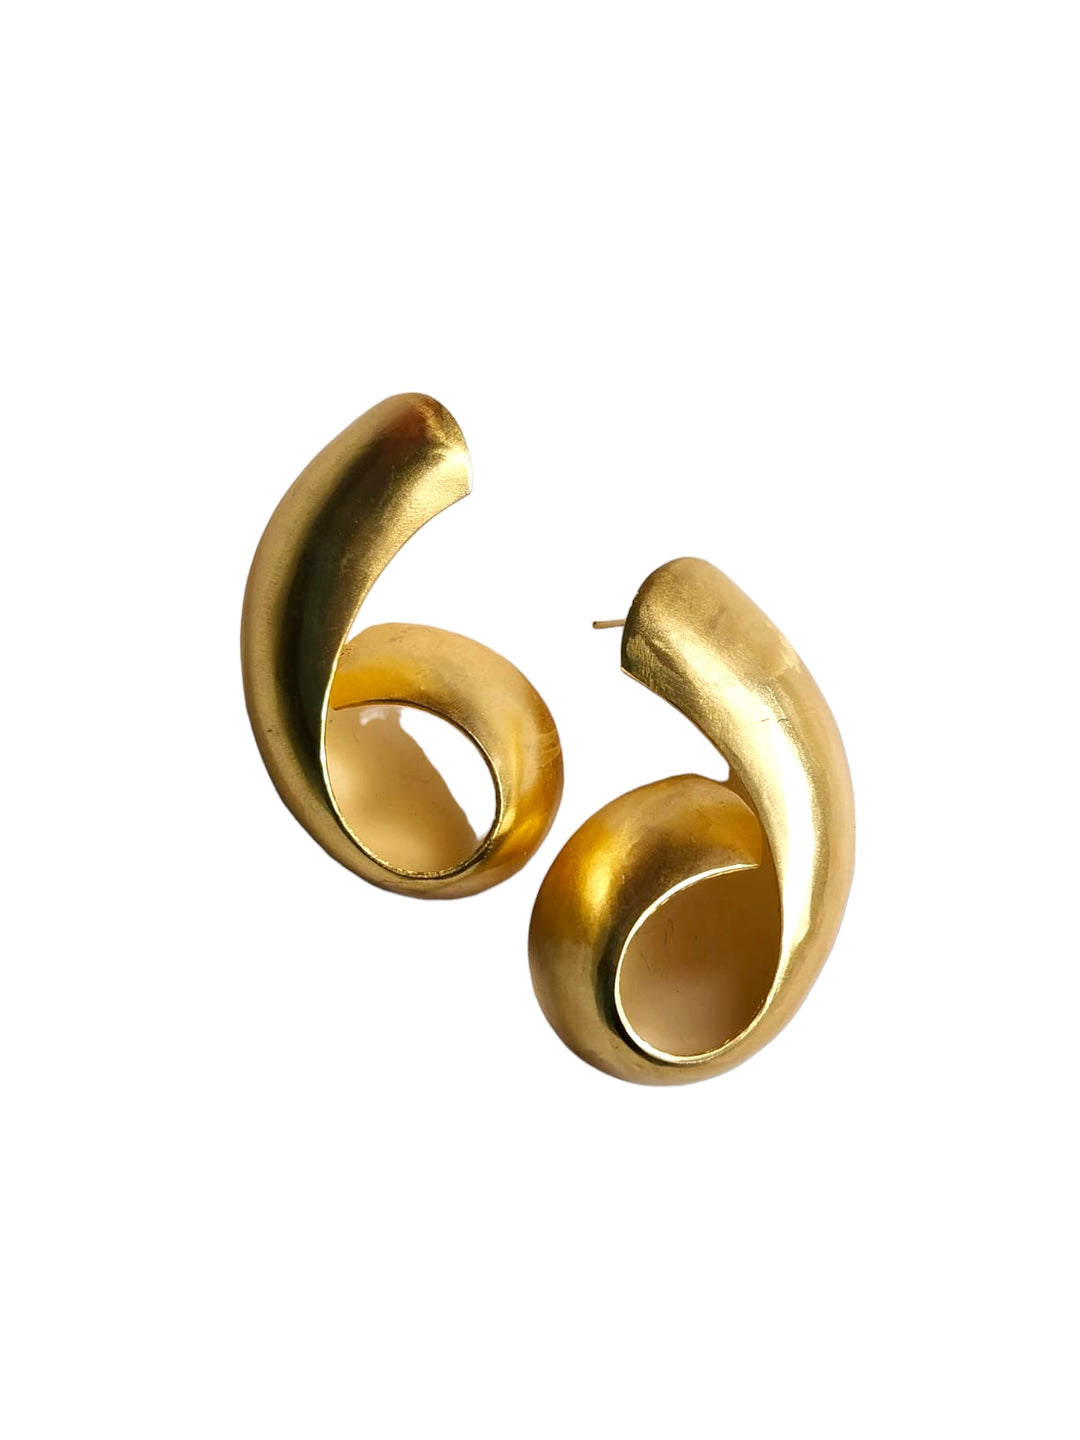 The Litia Brass Earrings